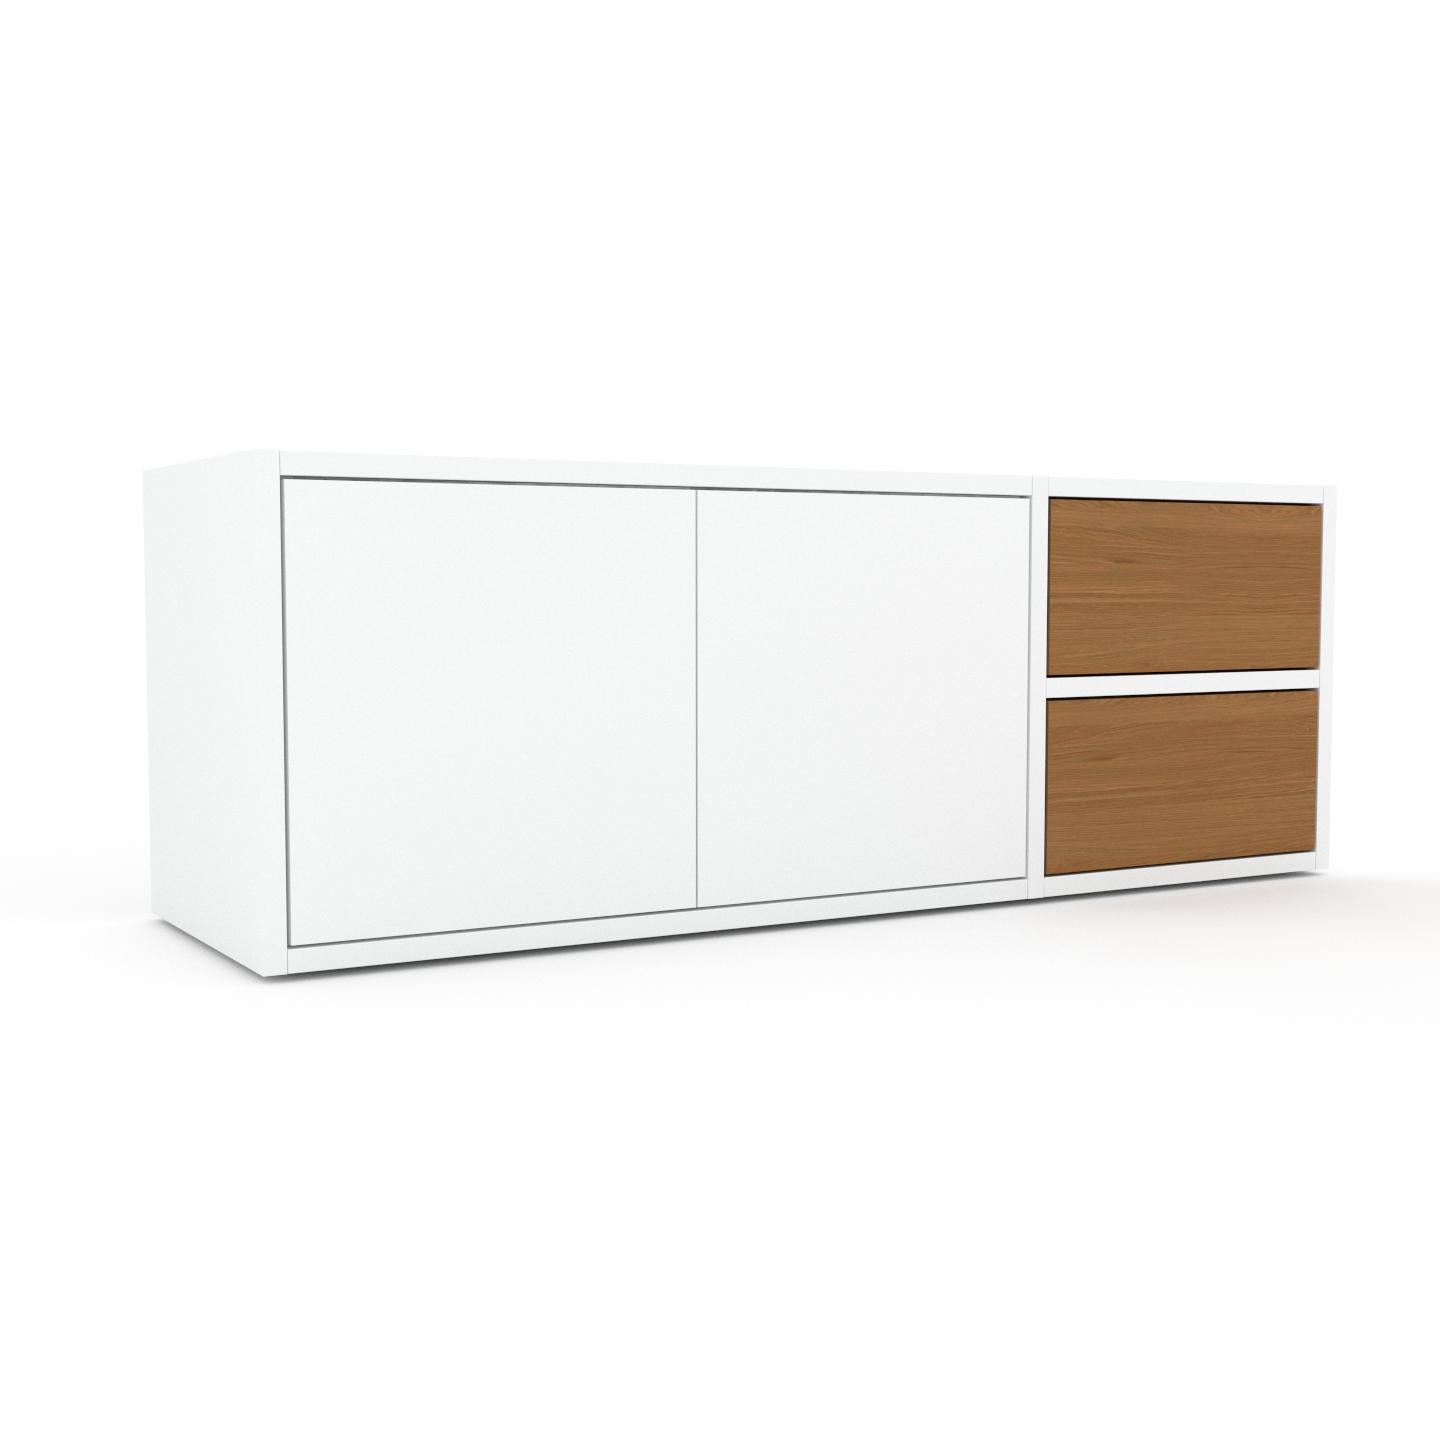 MYCS Bücherregal Weiß - Modernes Regal für Bücher: Schubladen in Eiche & Türen in Weiß - 116 x 41 x 35 cm, konfigurierbar